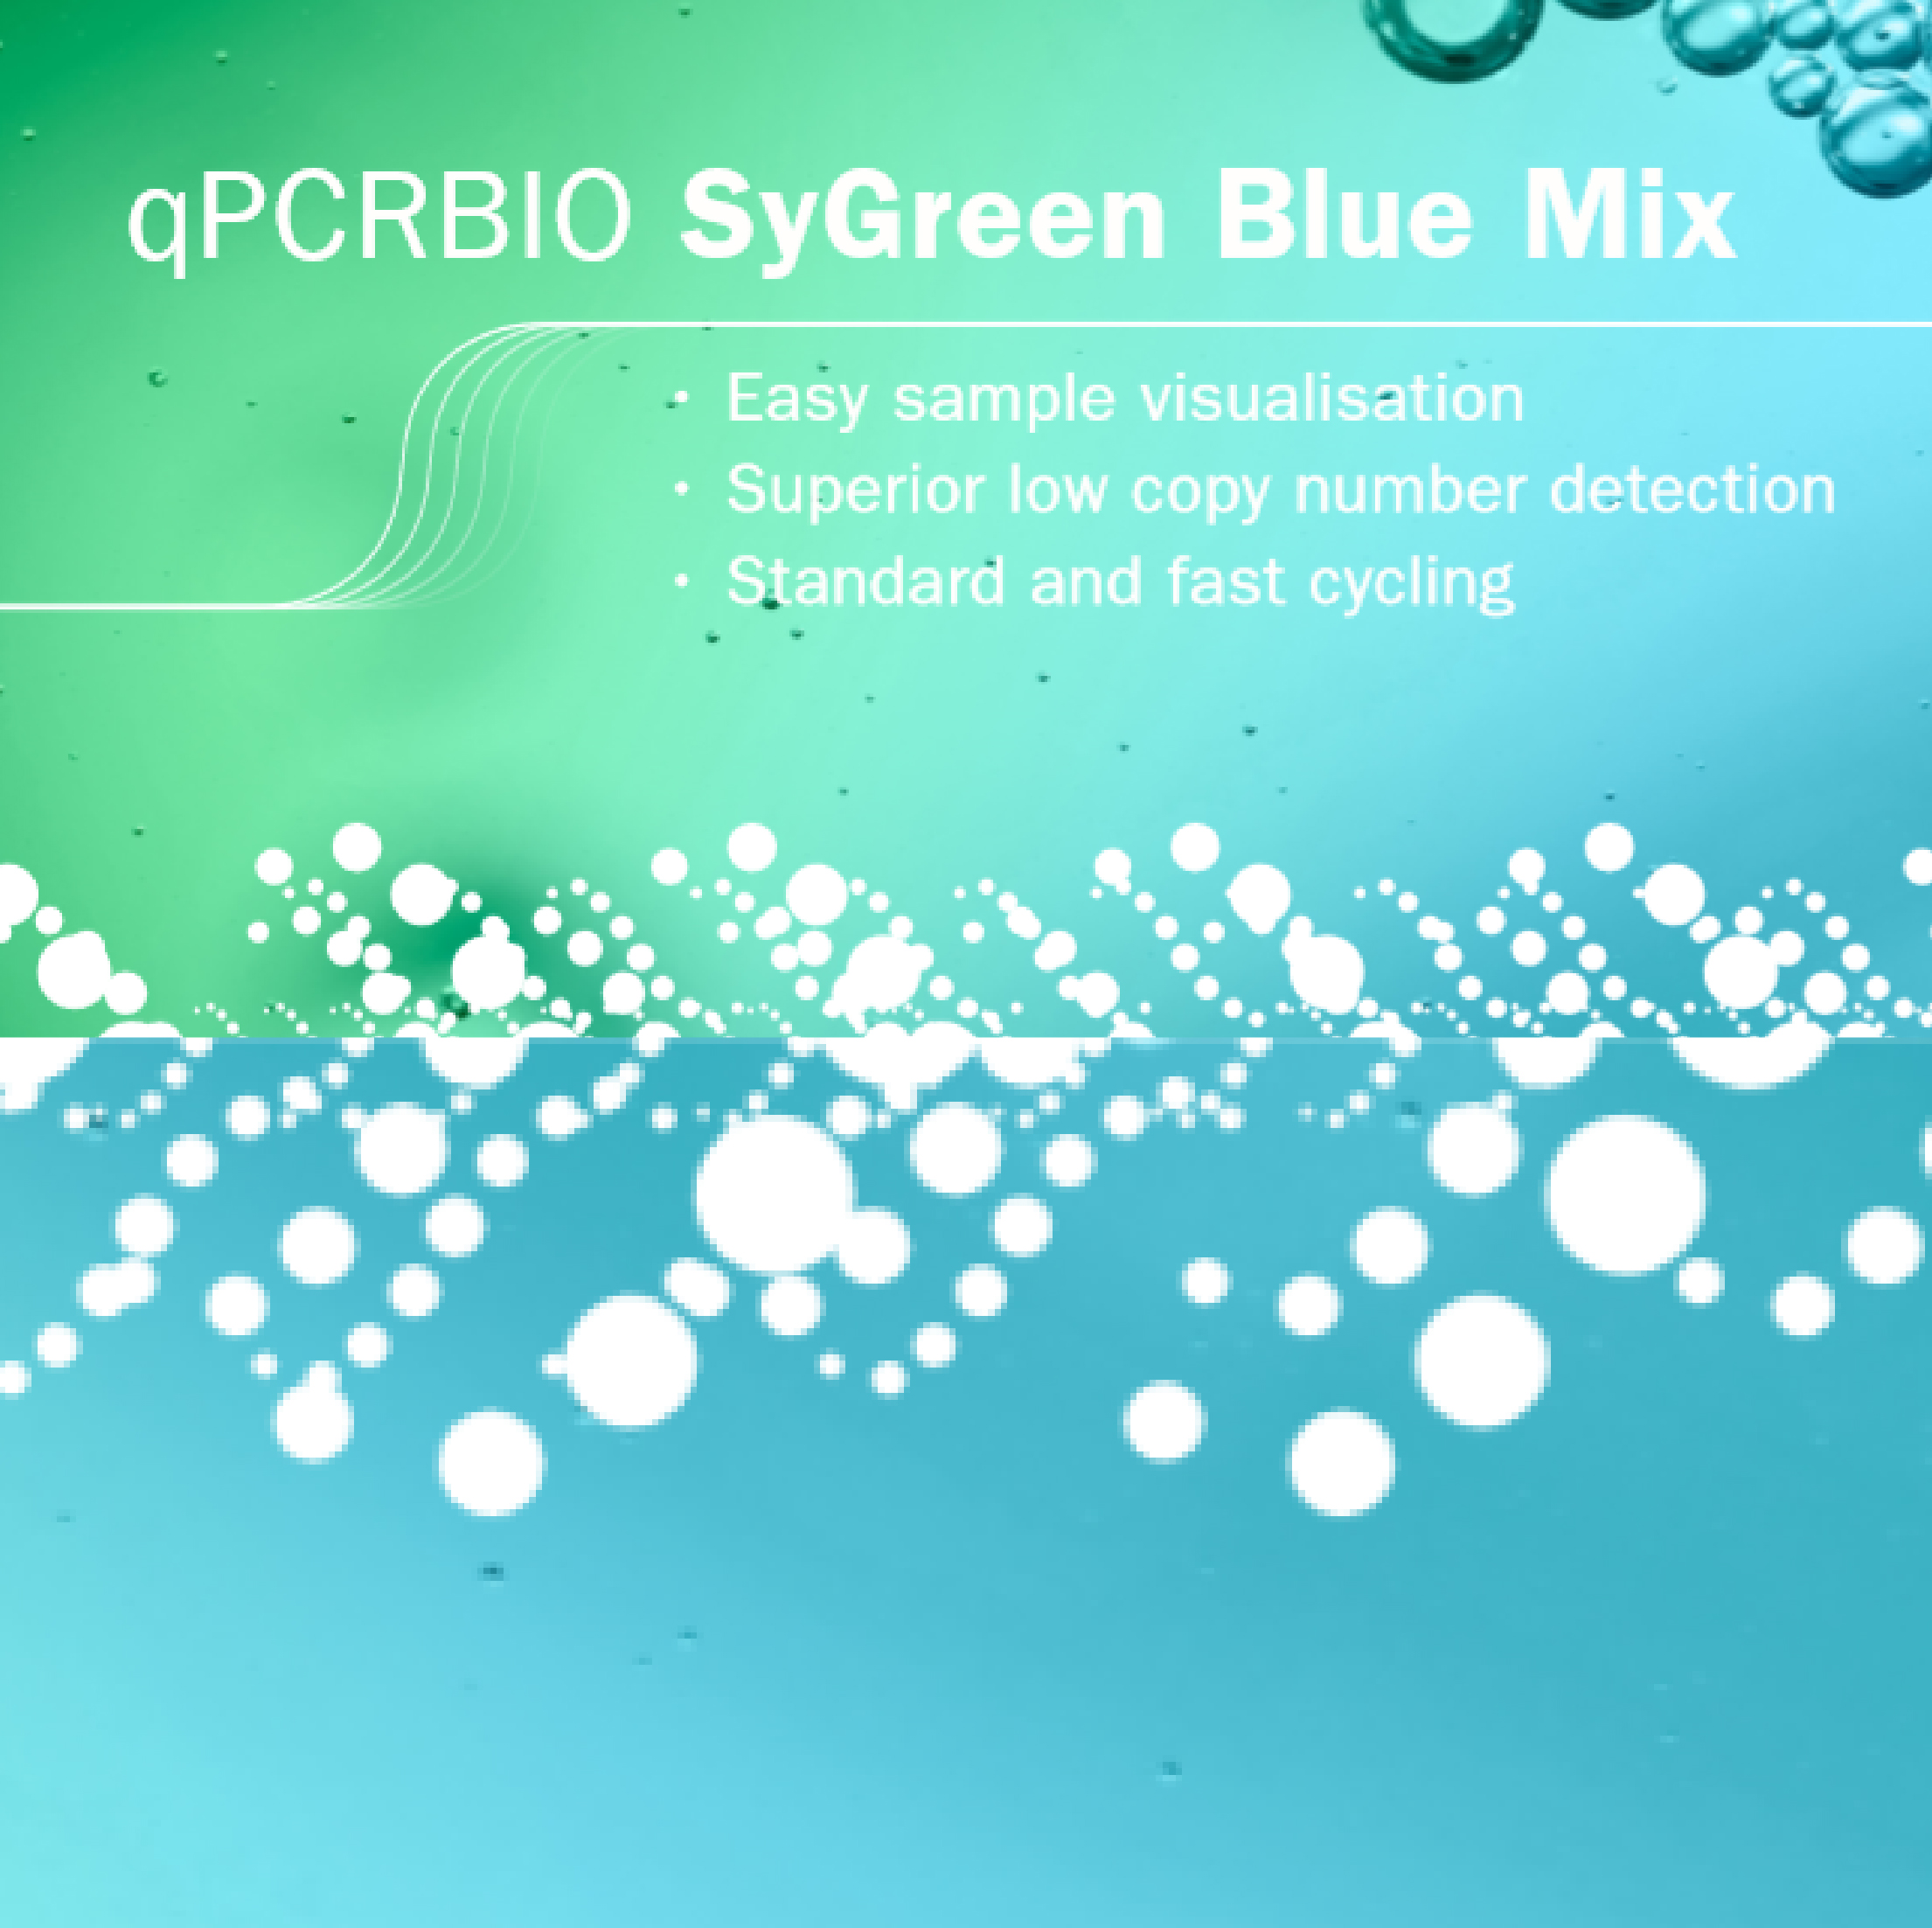 qPCRBIO SyGreen Blue Mix